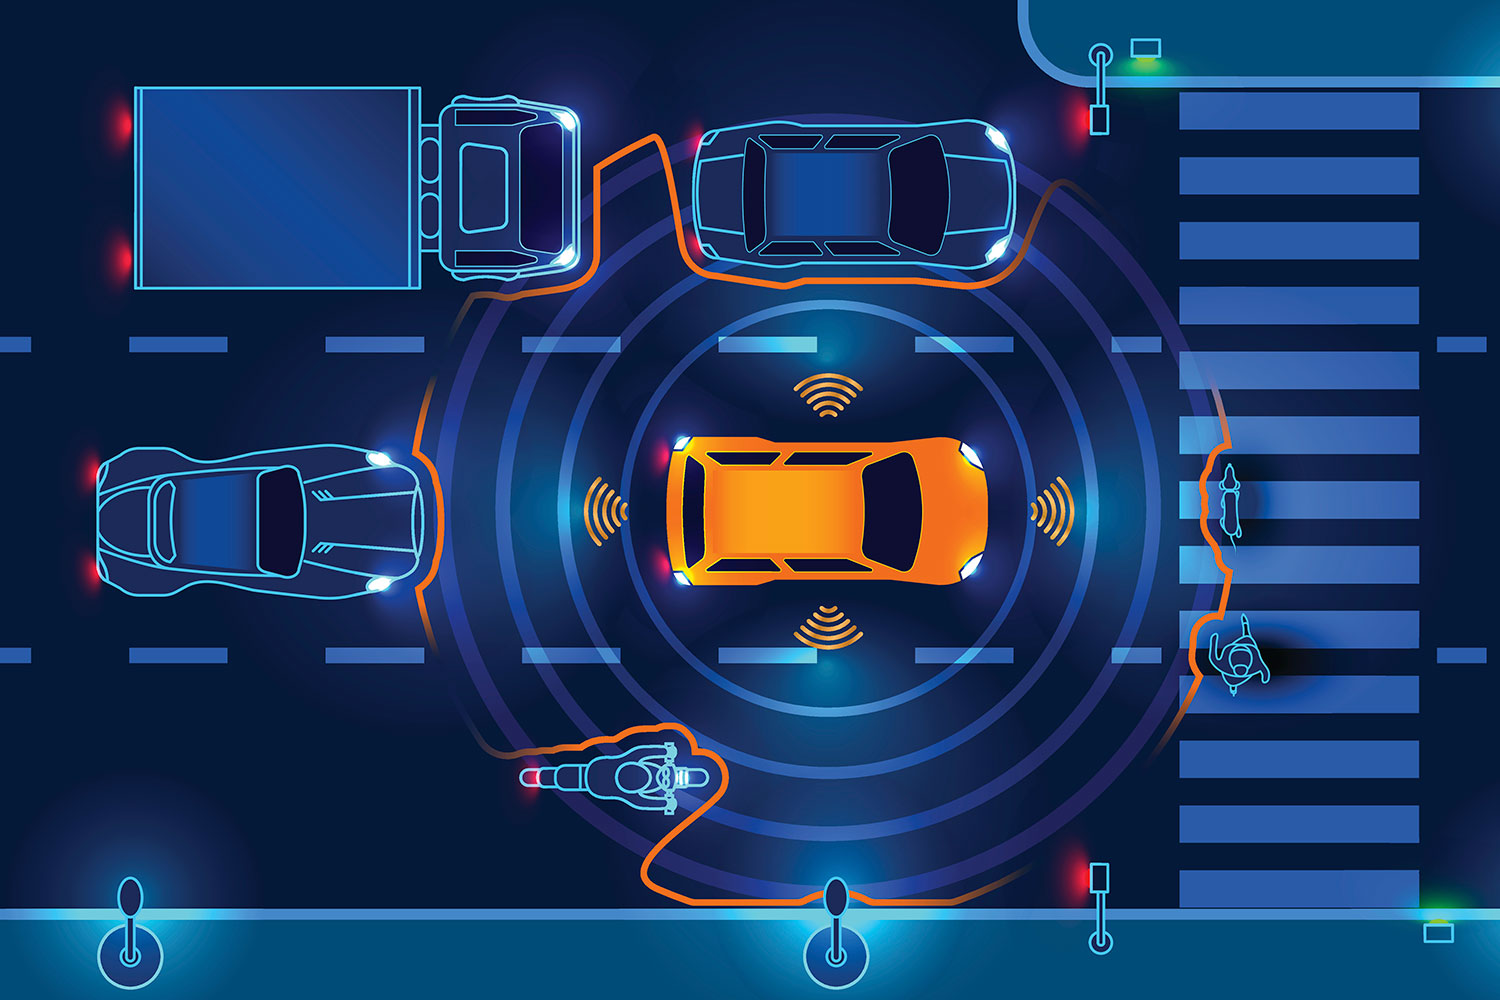 un vehículo autónomo utiliza sensores infrarrojos para detectar otros vehículos y obstáculos en el tráfico